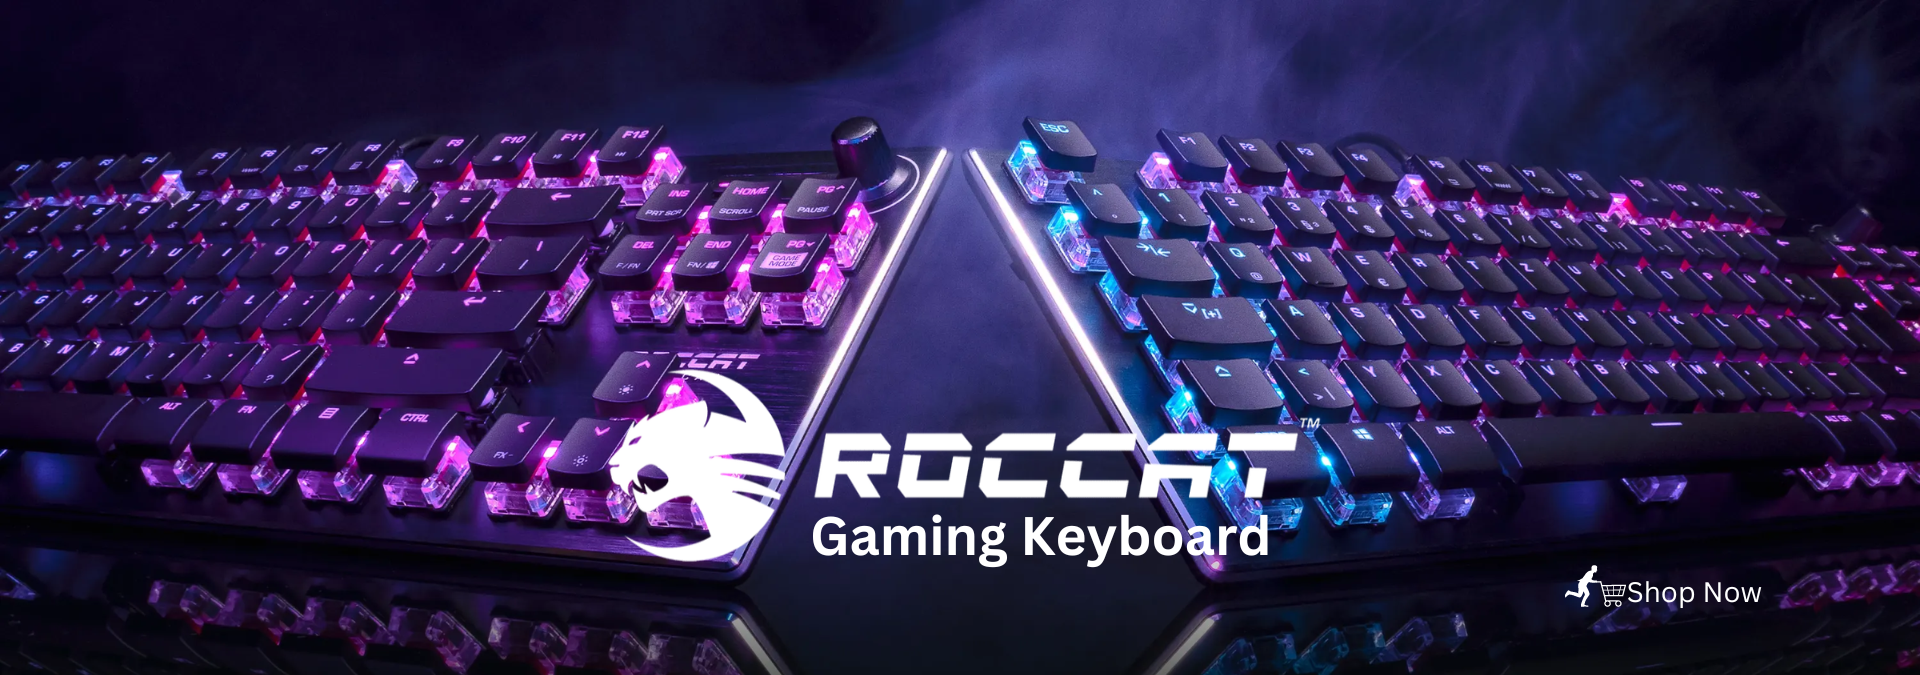 Gaming Keyboard Banner